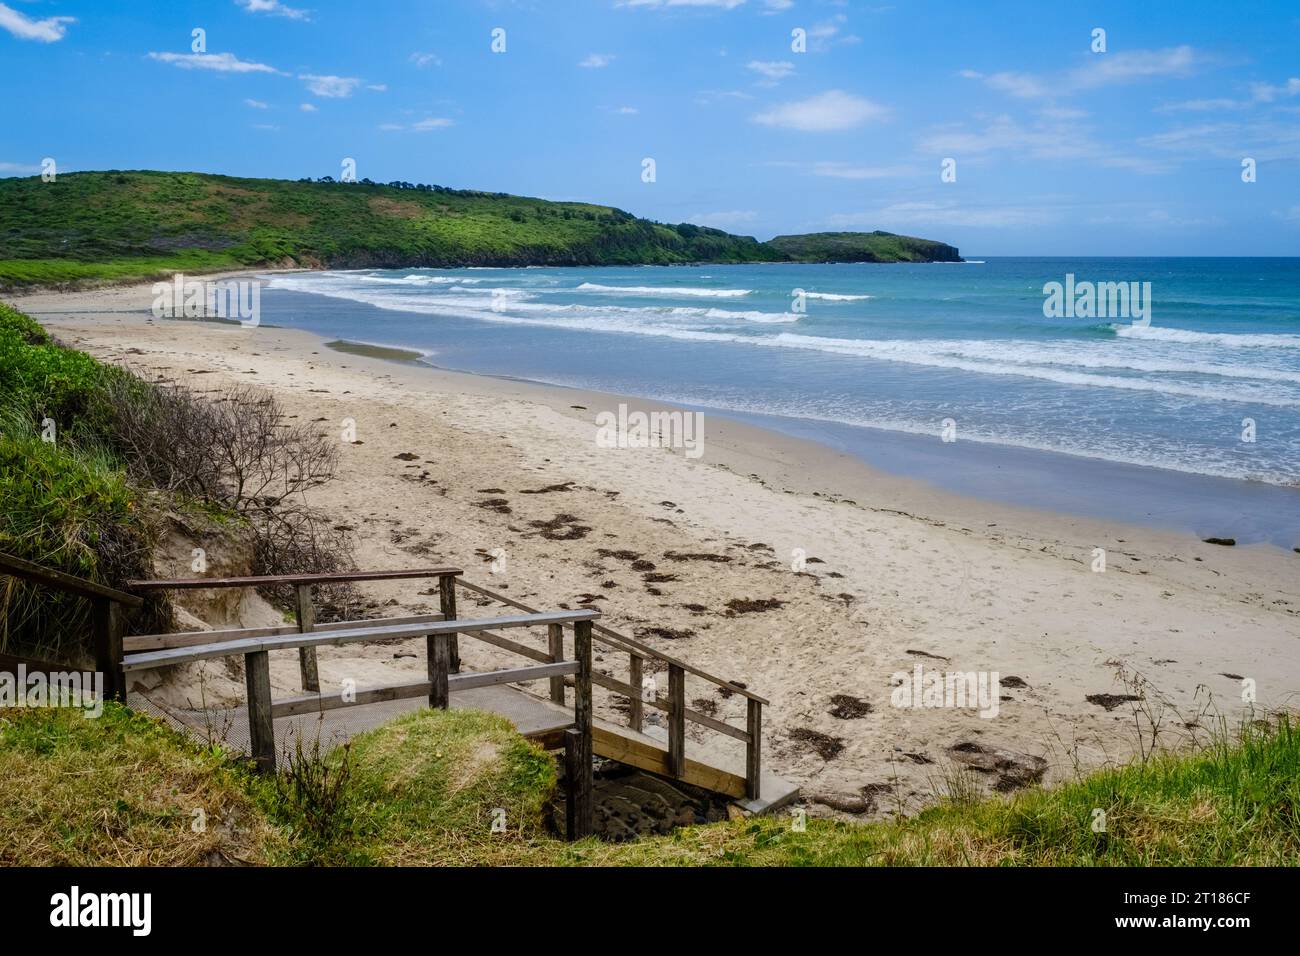 Killalea Beach (The Farm Beach), Killalea Regional Park, Shell Cove, New South Wales, Australia Stock Photo